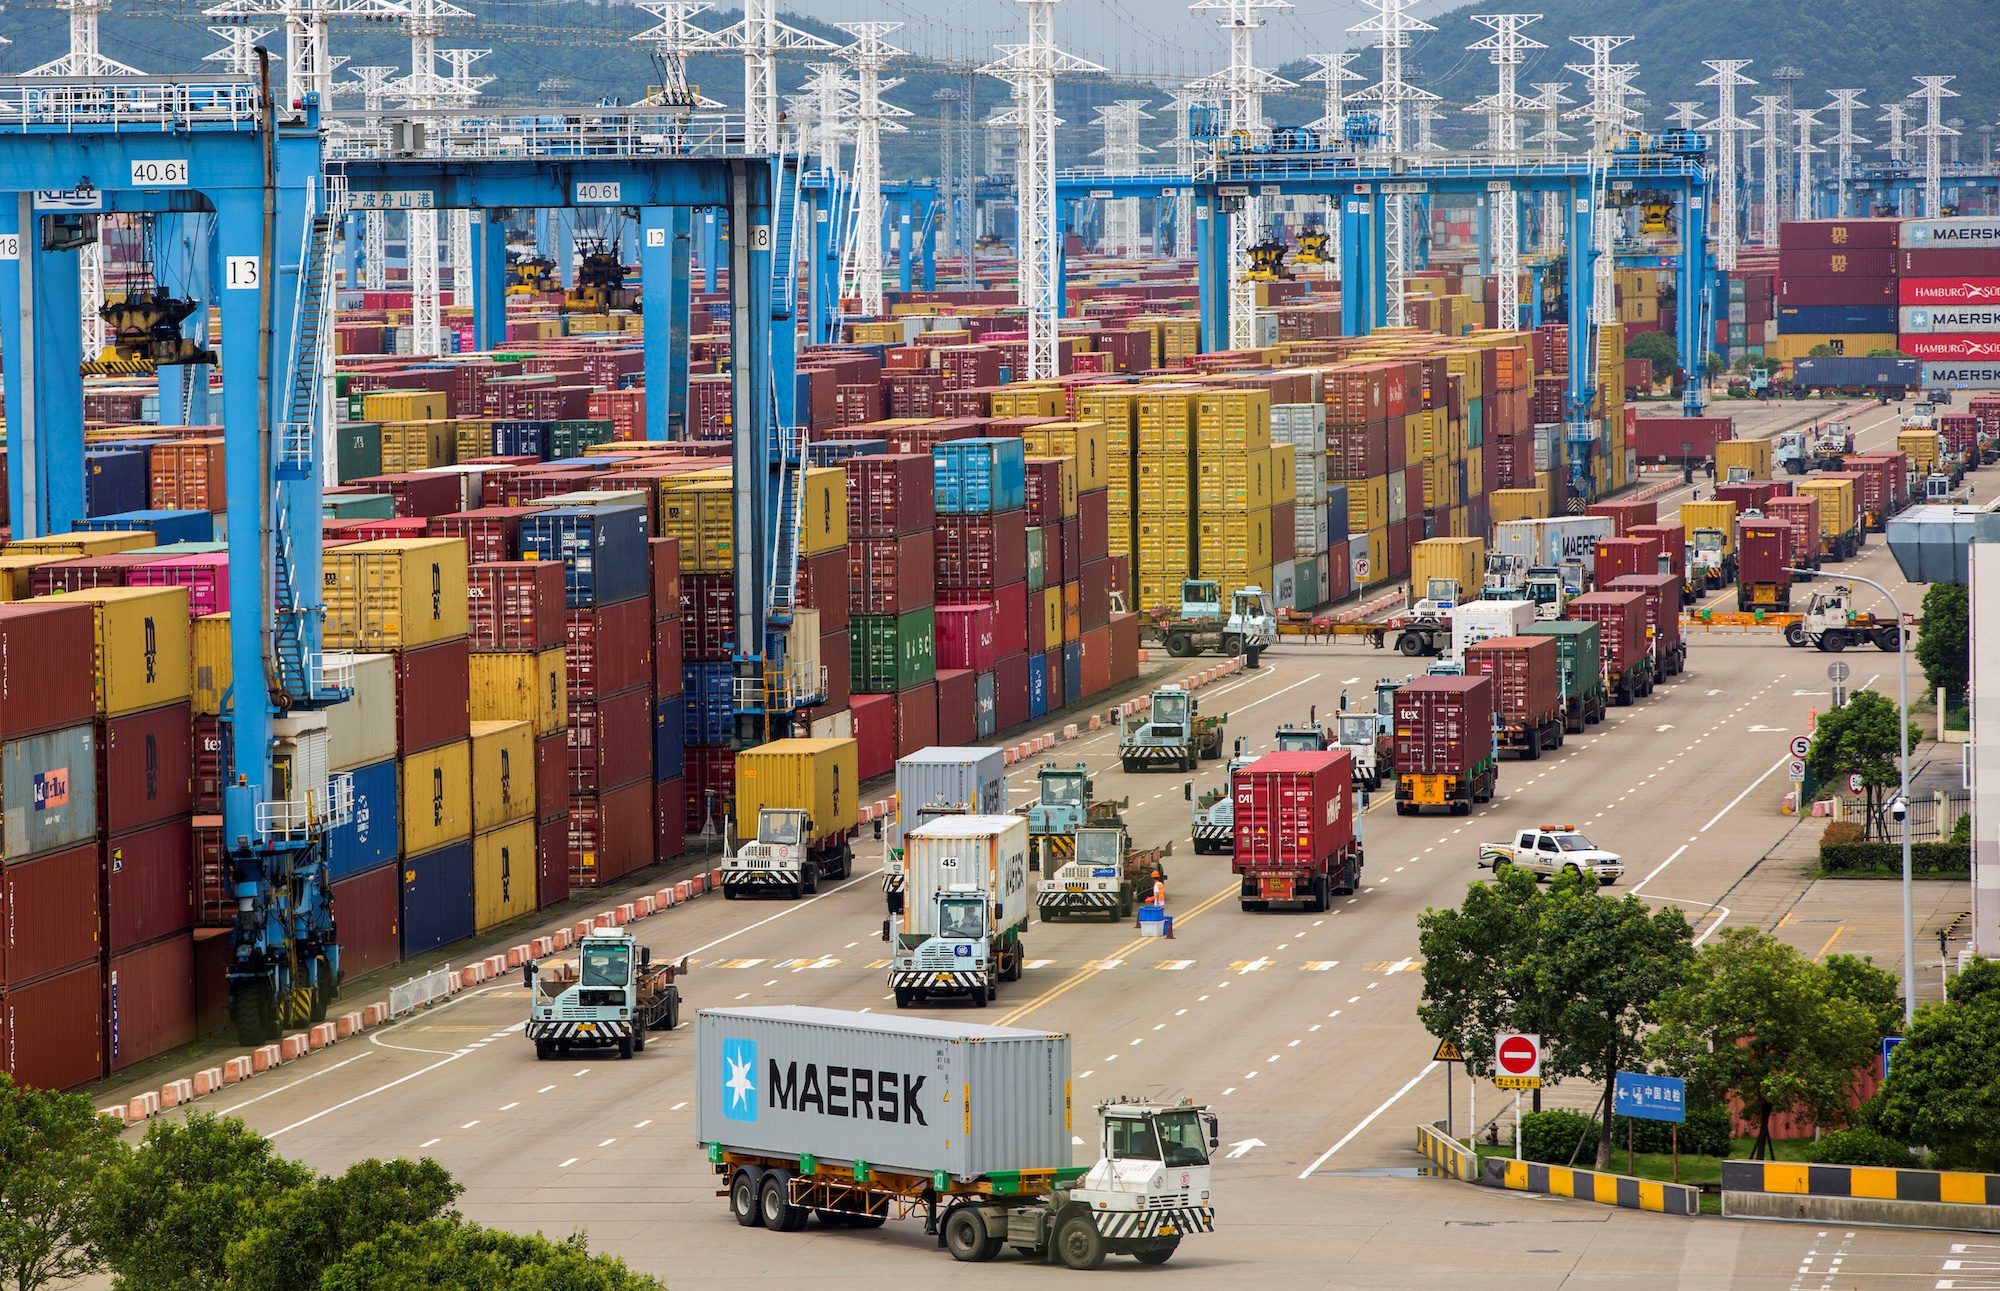 El comercio de mercancías destacará por su dinamismo en Asia entre todas las regiones del mundo en 2022 y 2023. Merchandise trade will stand out for its dynamism in Asia among all world regions in 2022 and 2023.